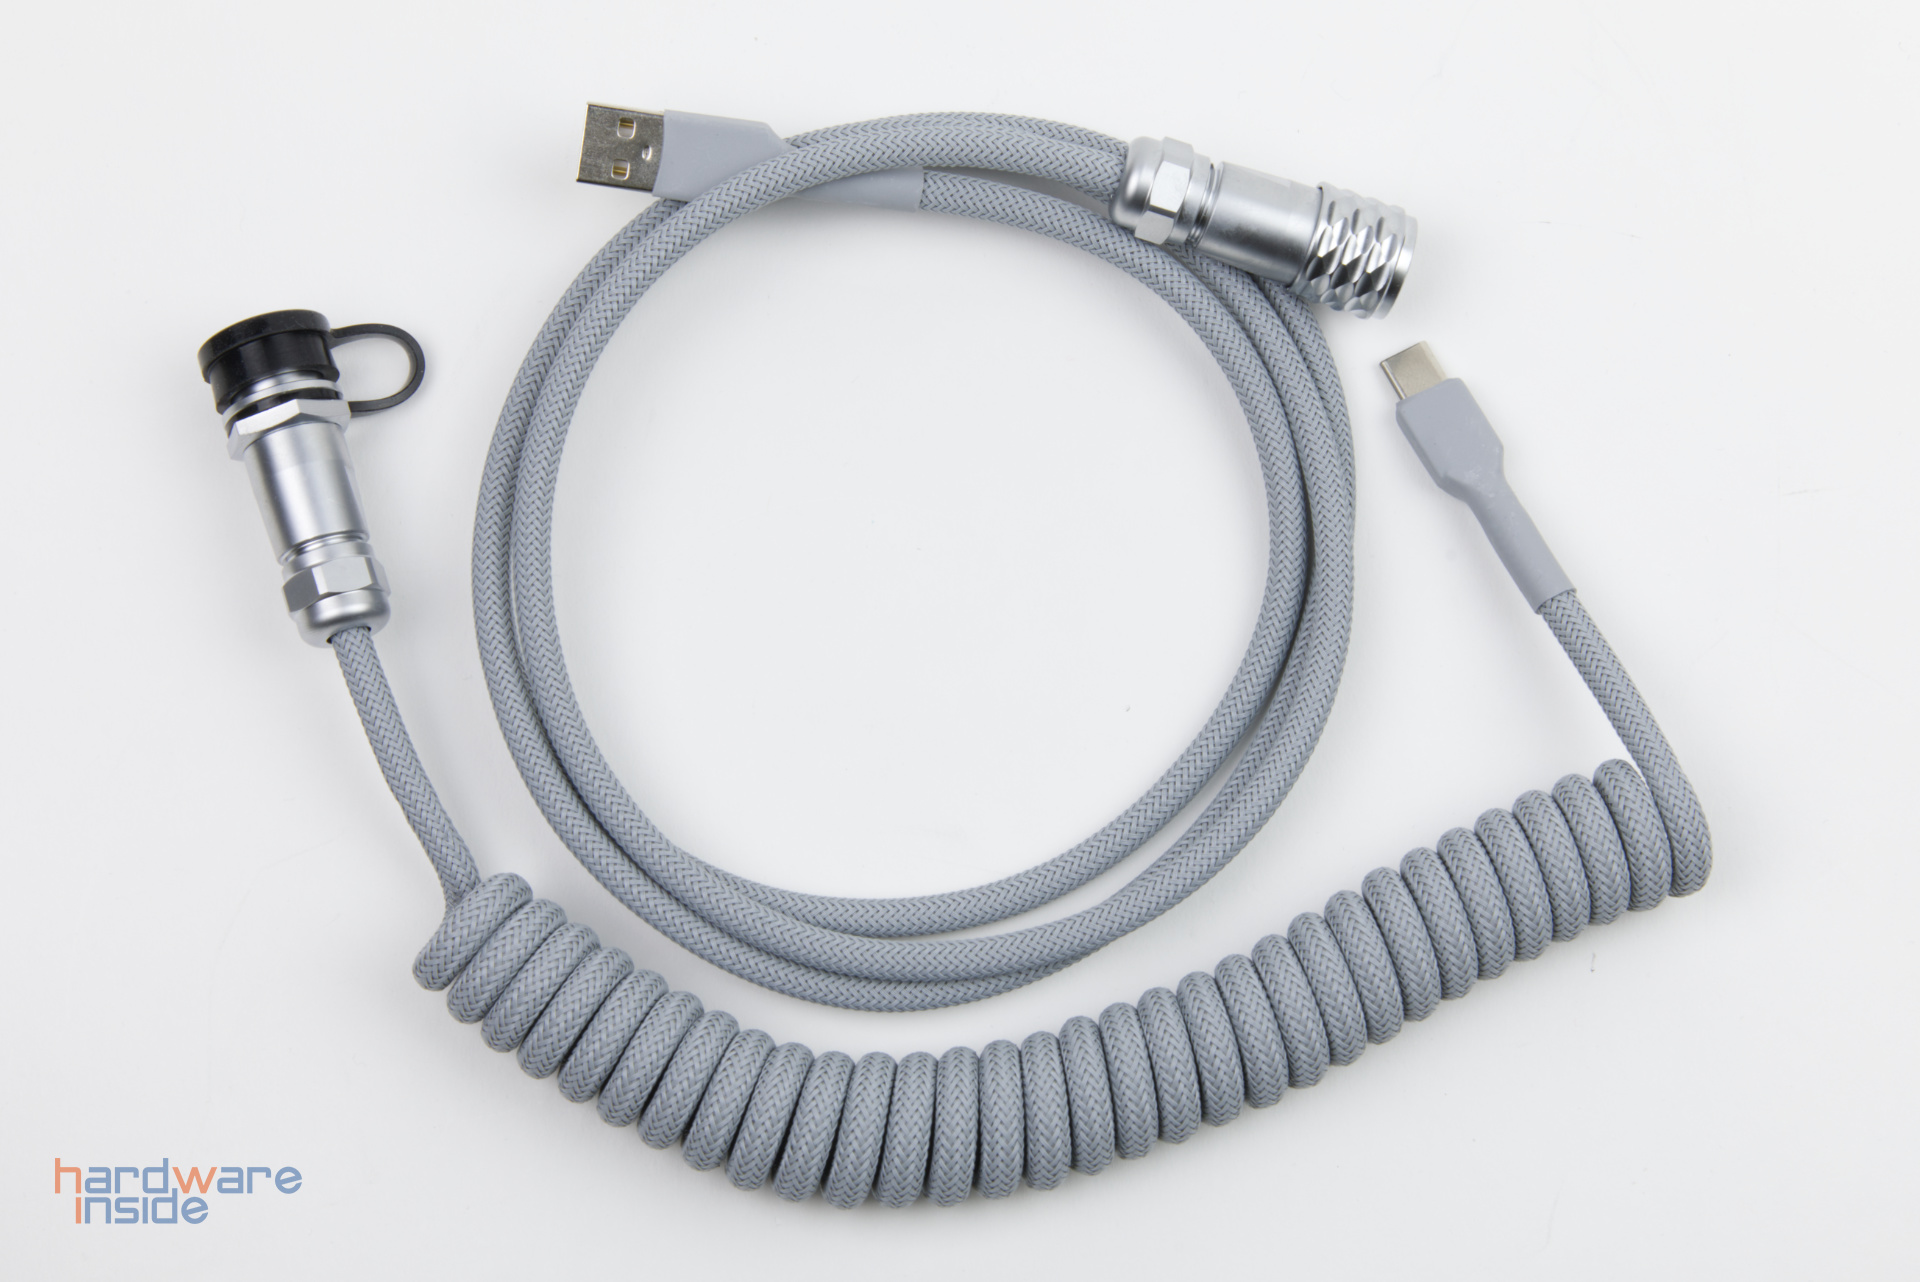 Keebstuff-Kabelmanufaktur-Mechanical-Keyboard-Cables-handcrafted-1.jpg